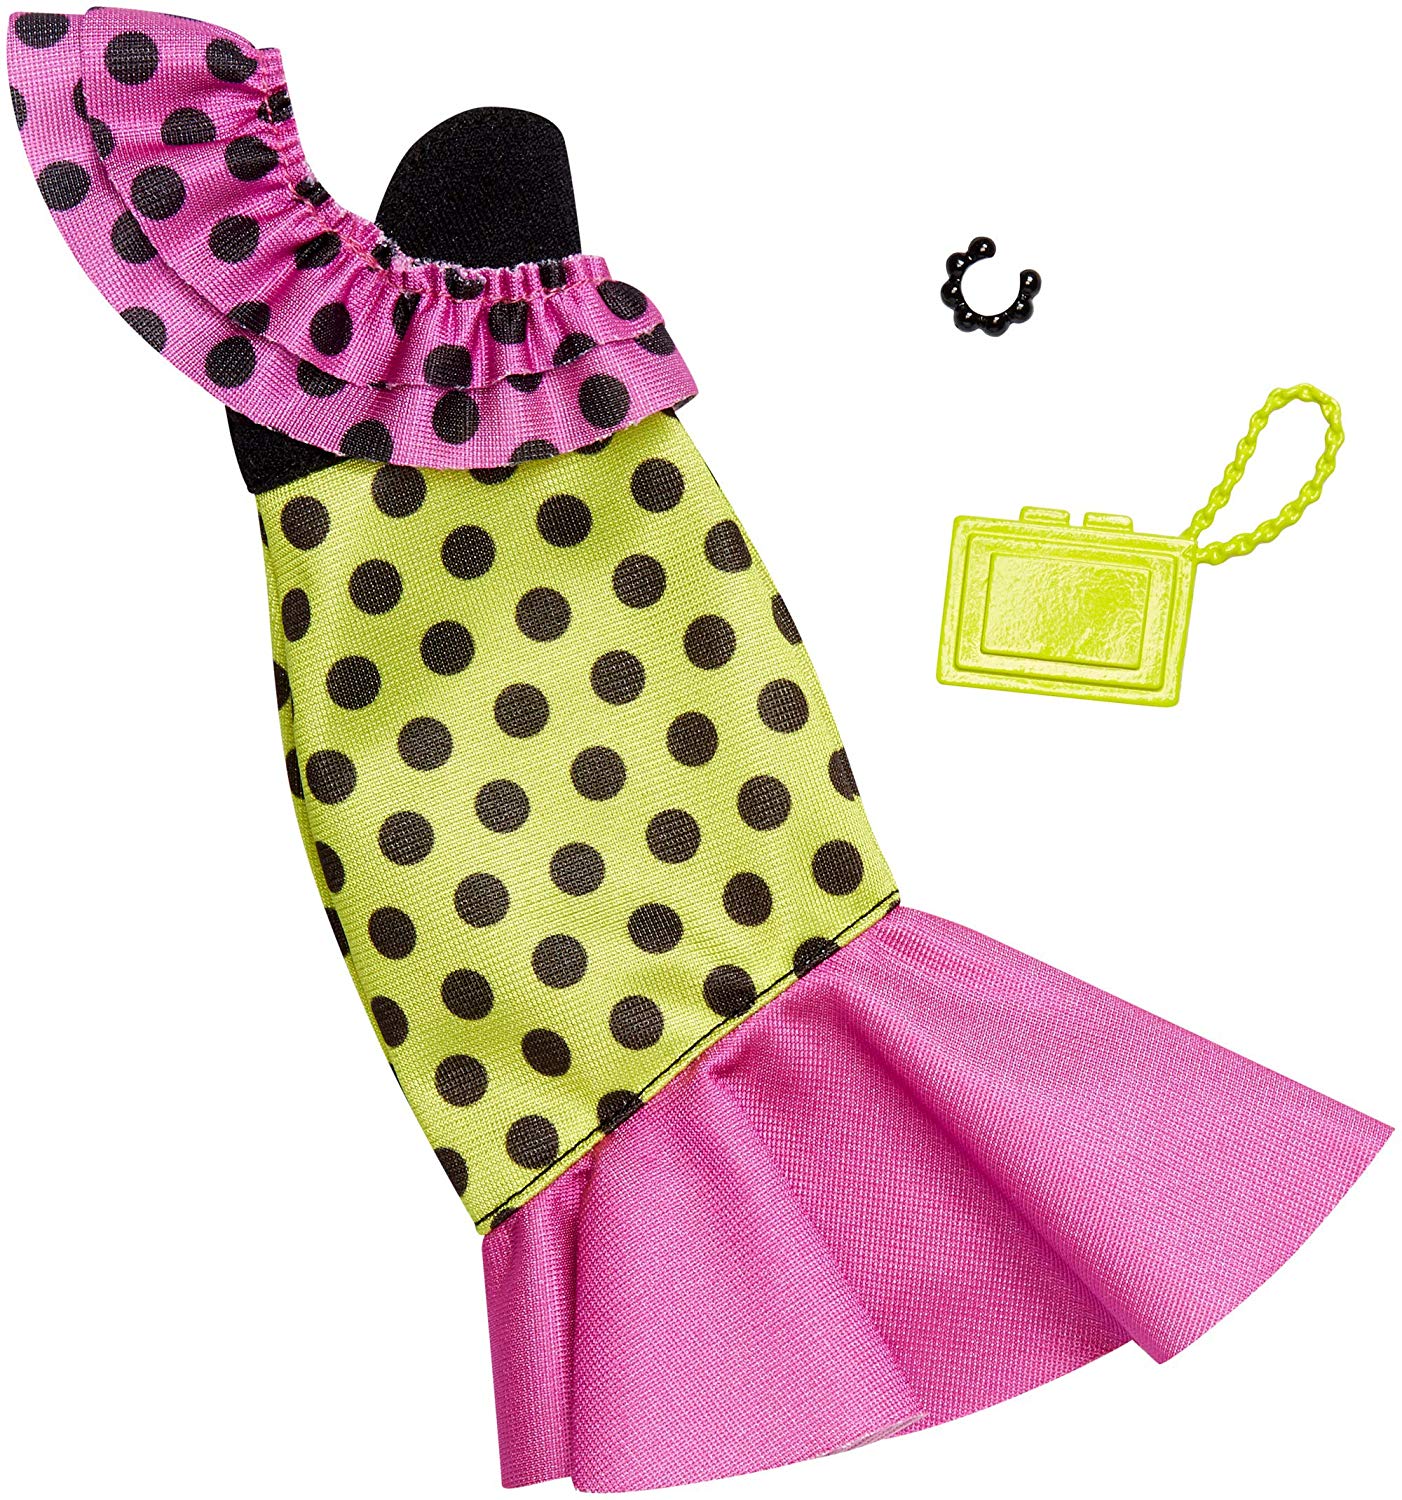 multicolor polka dot dress